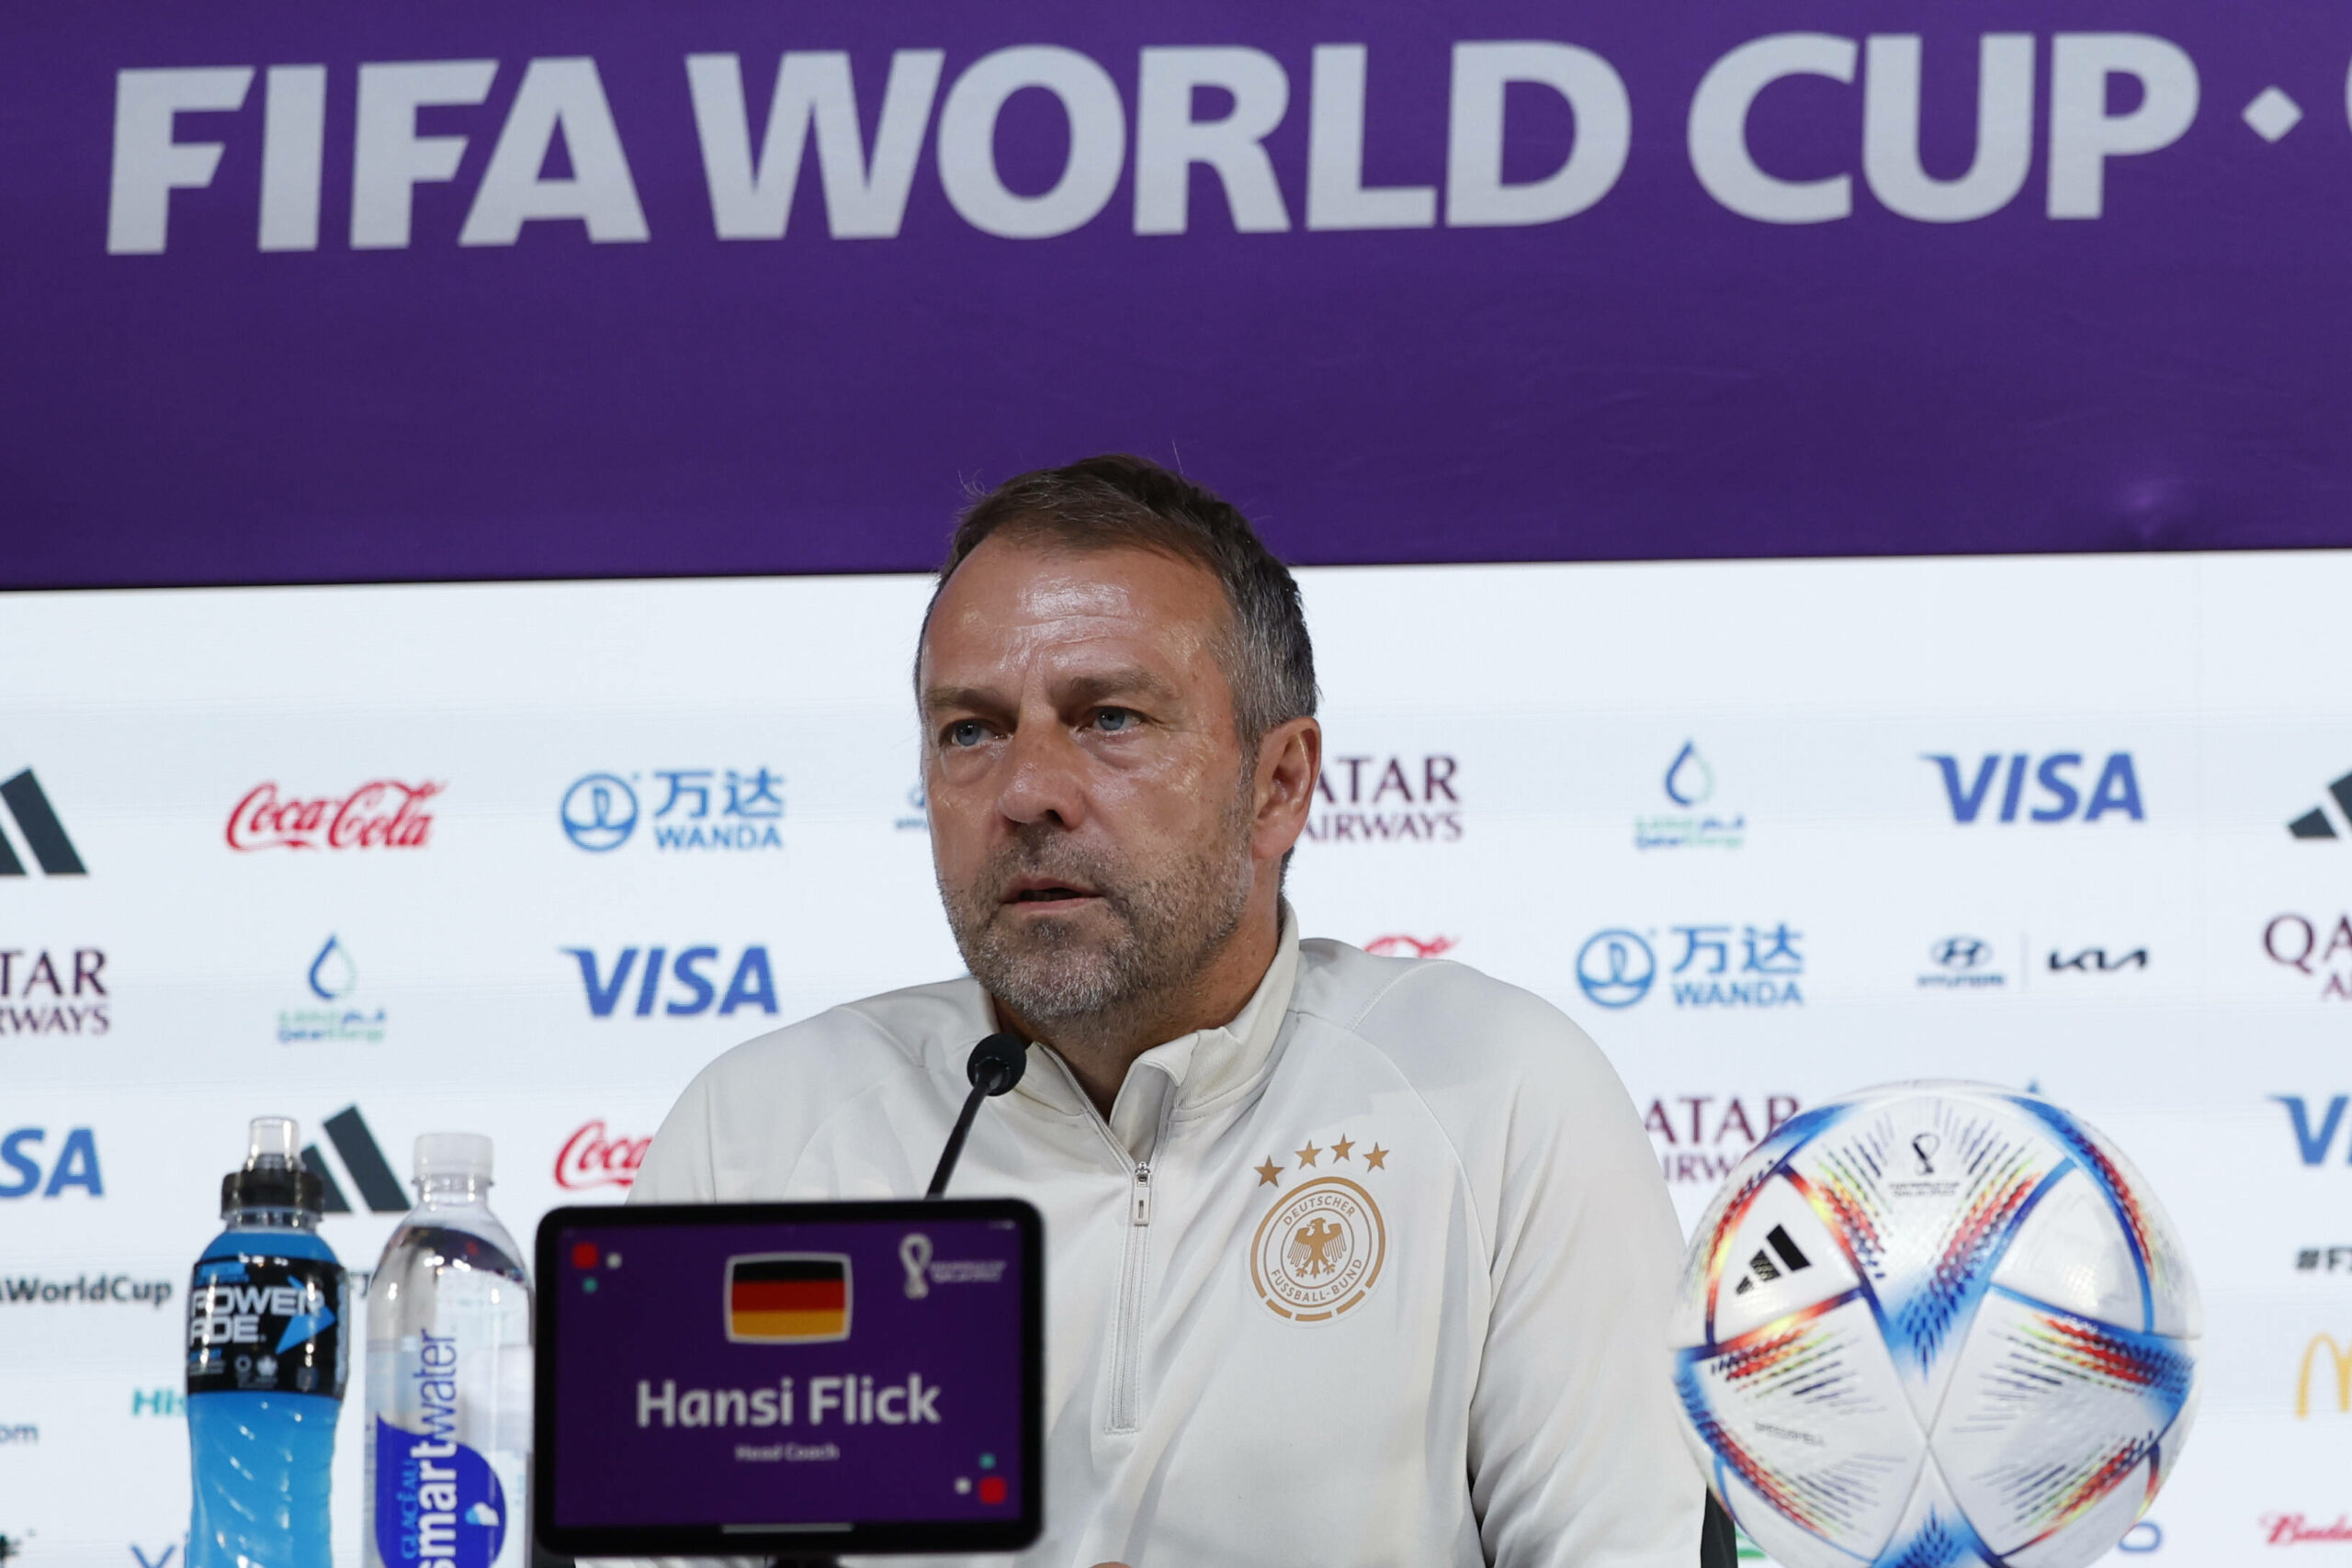 Hansi Flick absolvierte die Pressekonferenz vor dem Spiel gegen Spanien ohne Spieler an seiner Seite.